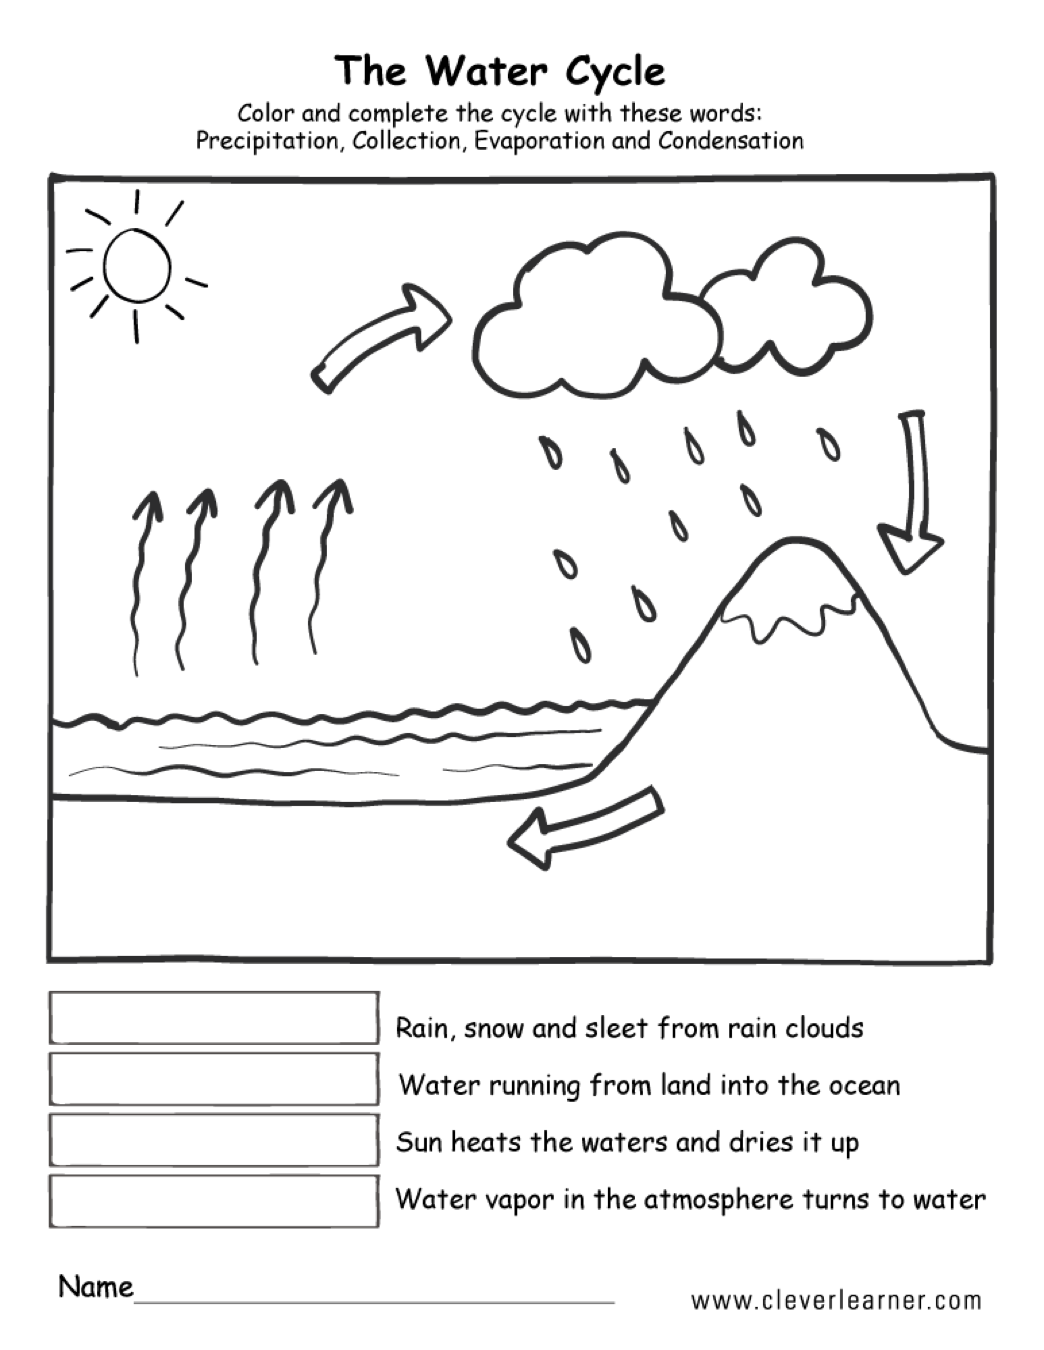 Water Cycle Diagram Worksheet